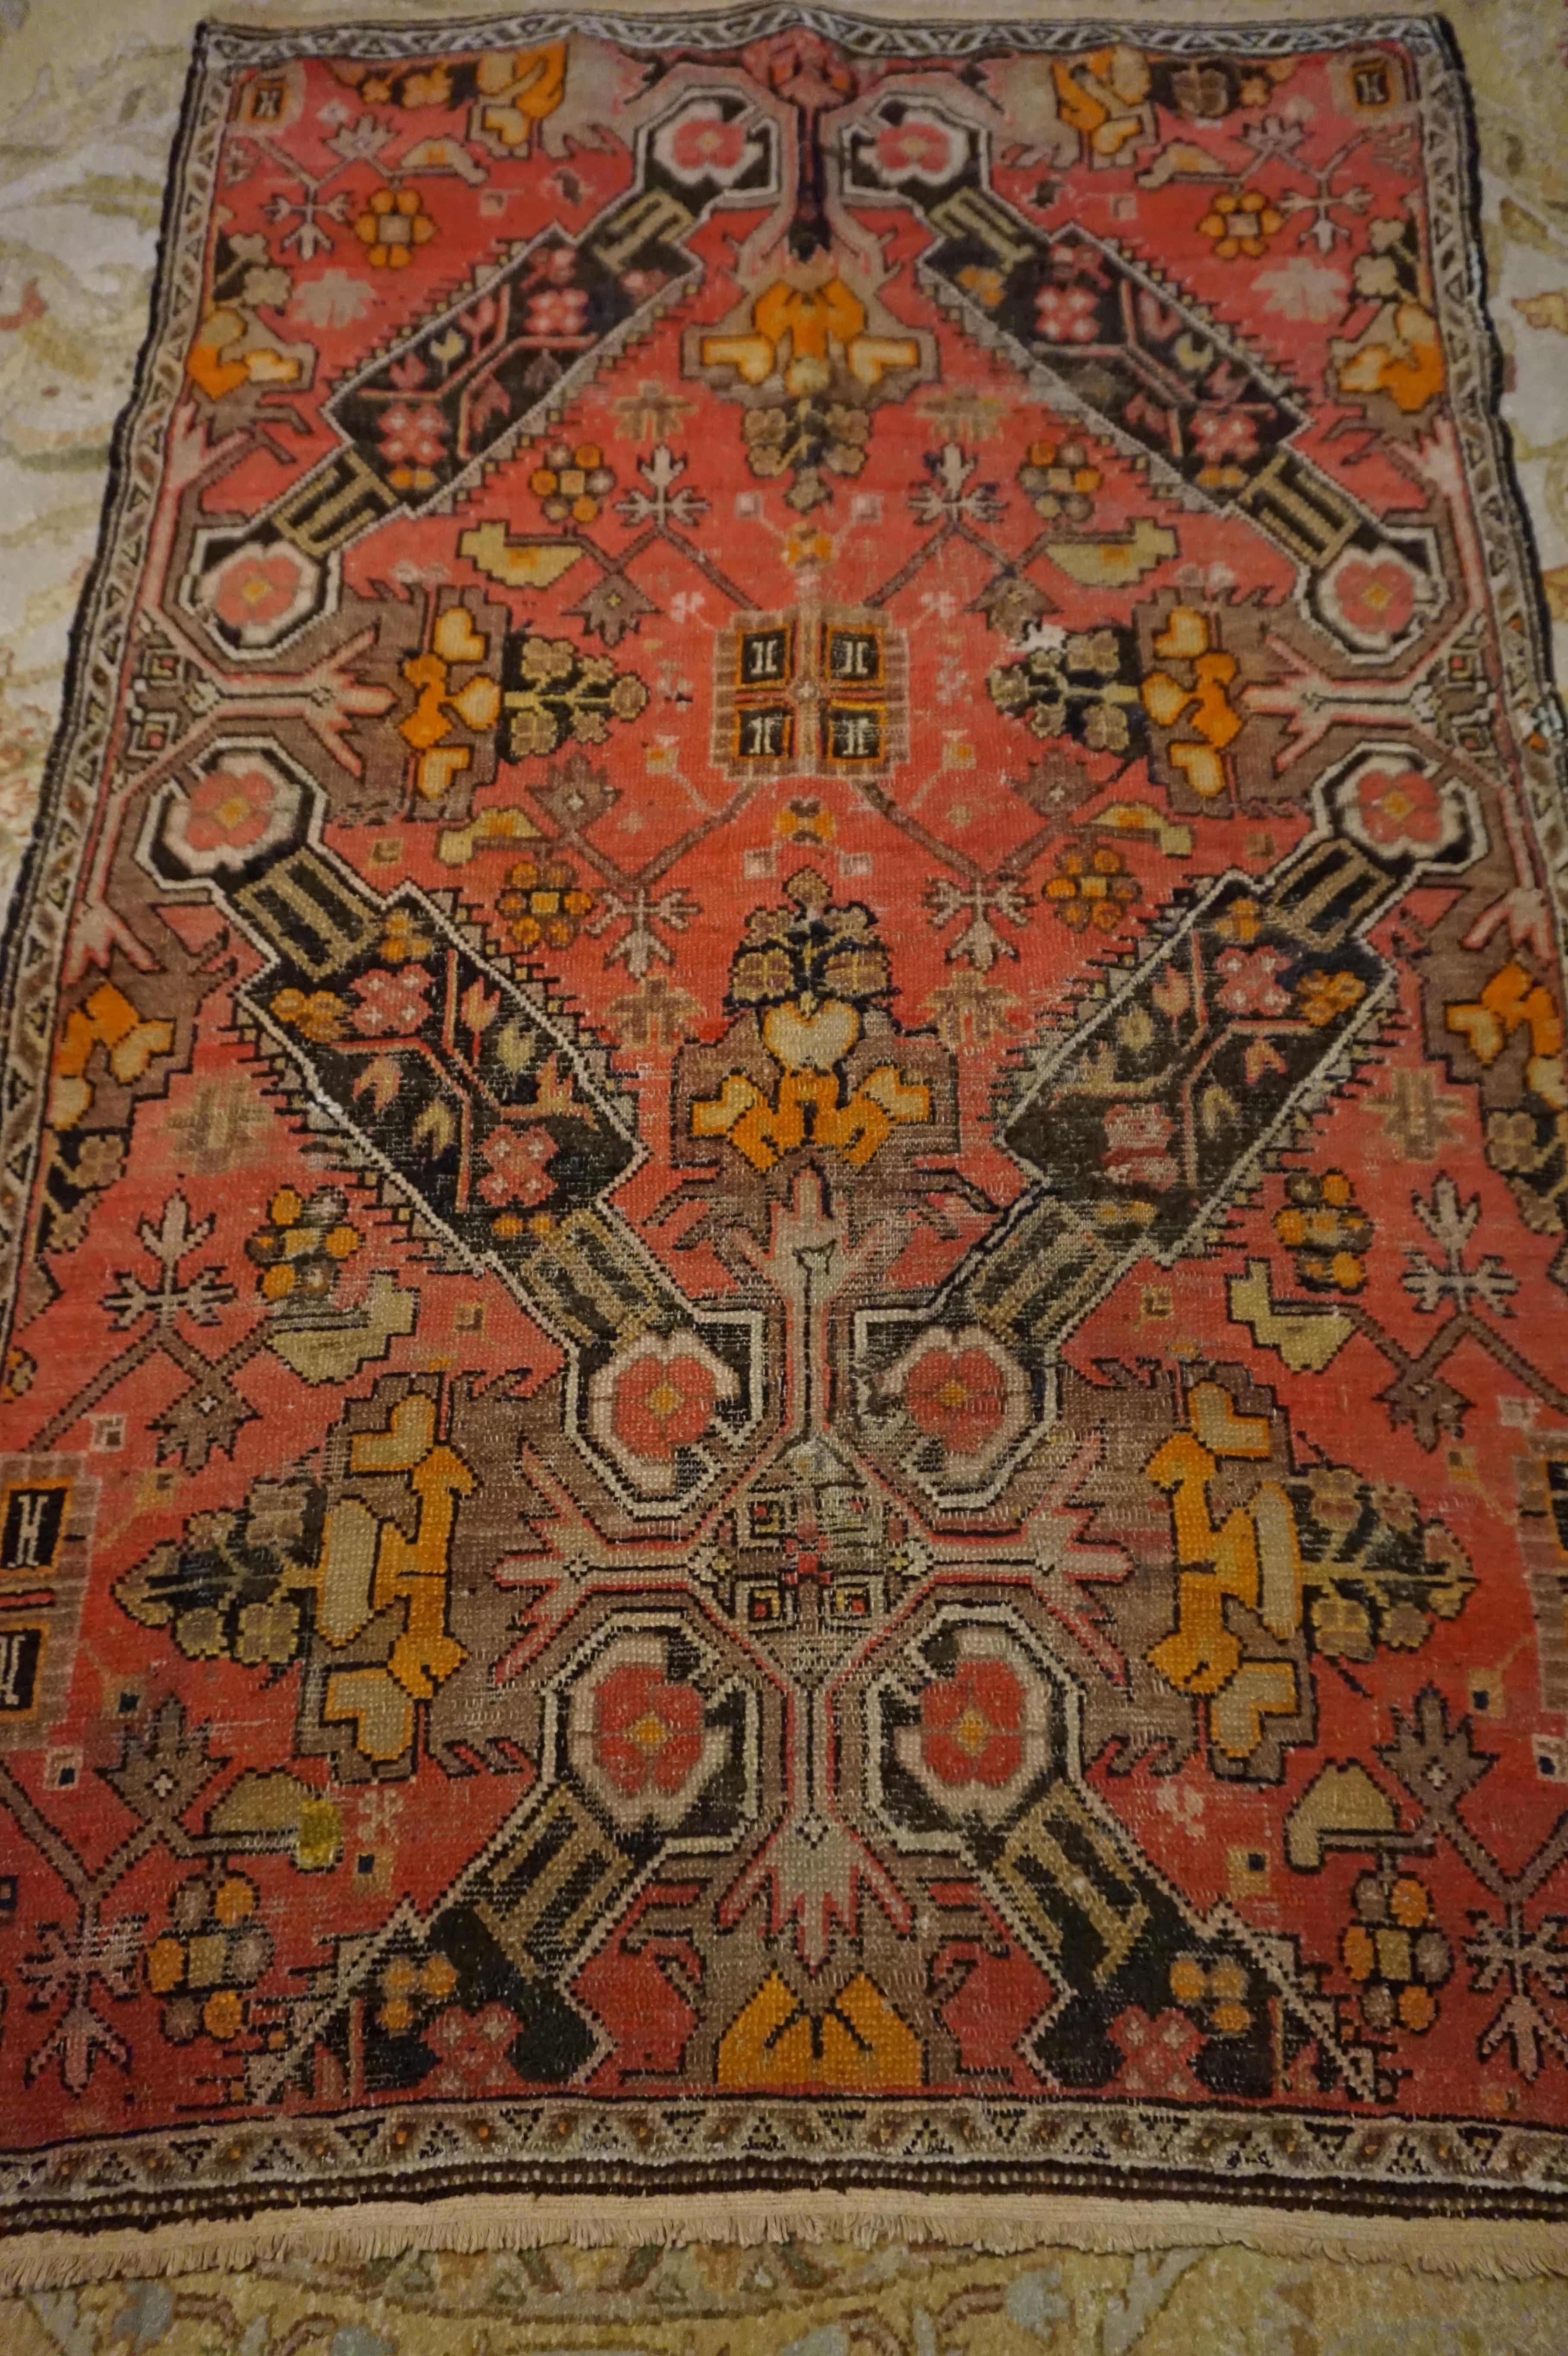 Seltener georgianischer Kaukasus-Teppich in lachs- und rosafarbenen Tönen mit kiteförmigen Medaillons, die ein florales geometrisches Motiv umschließen. Der Gesamtzustand ist hochgelobt, aber mit viel Leben zu bieten. Das gut konzipierte Muster